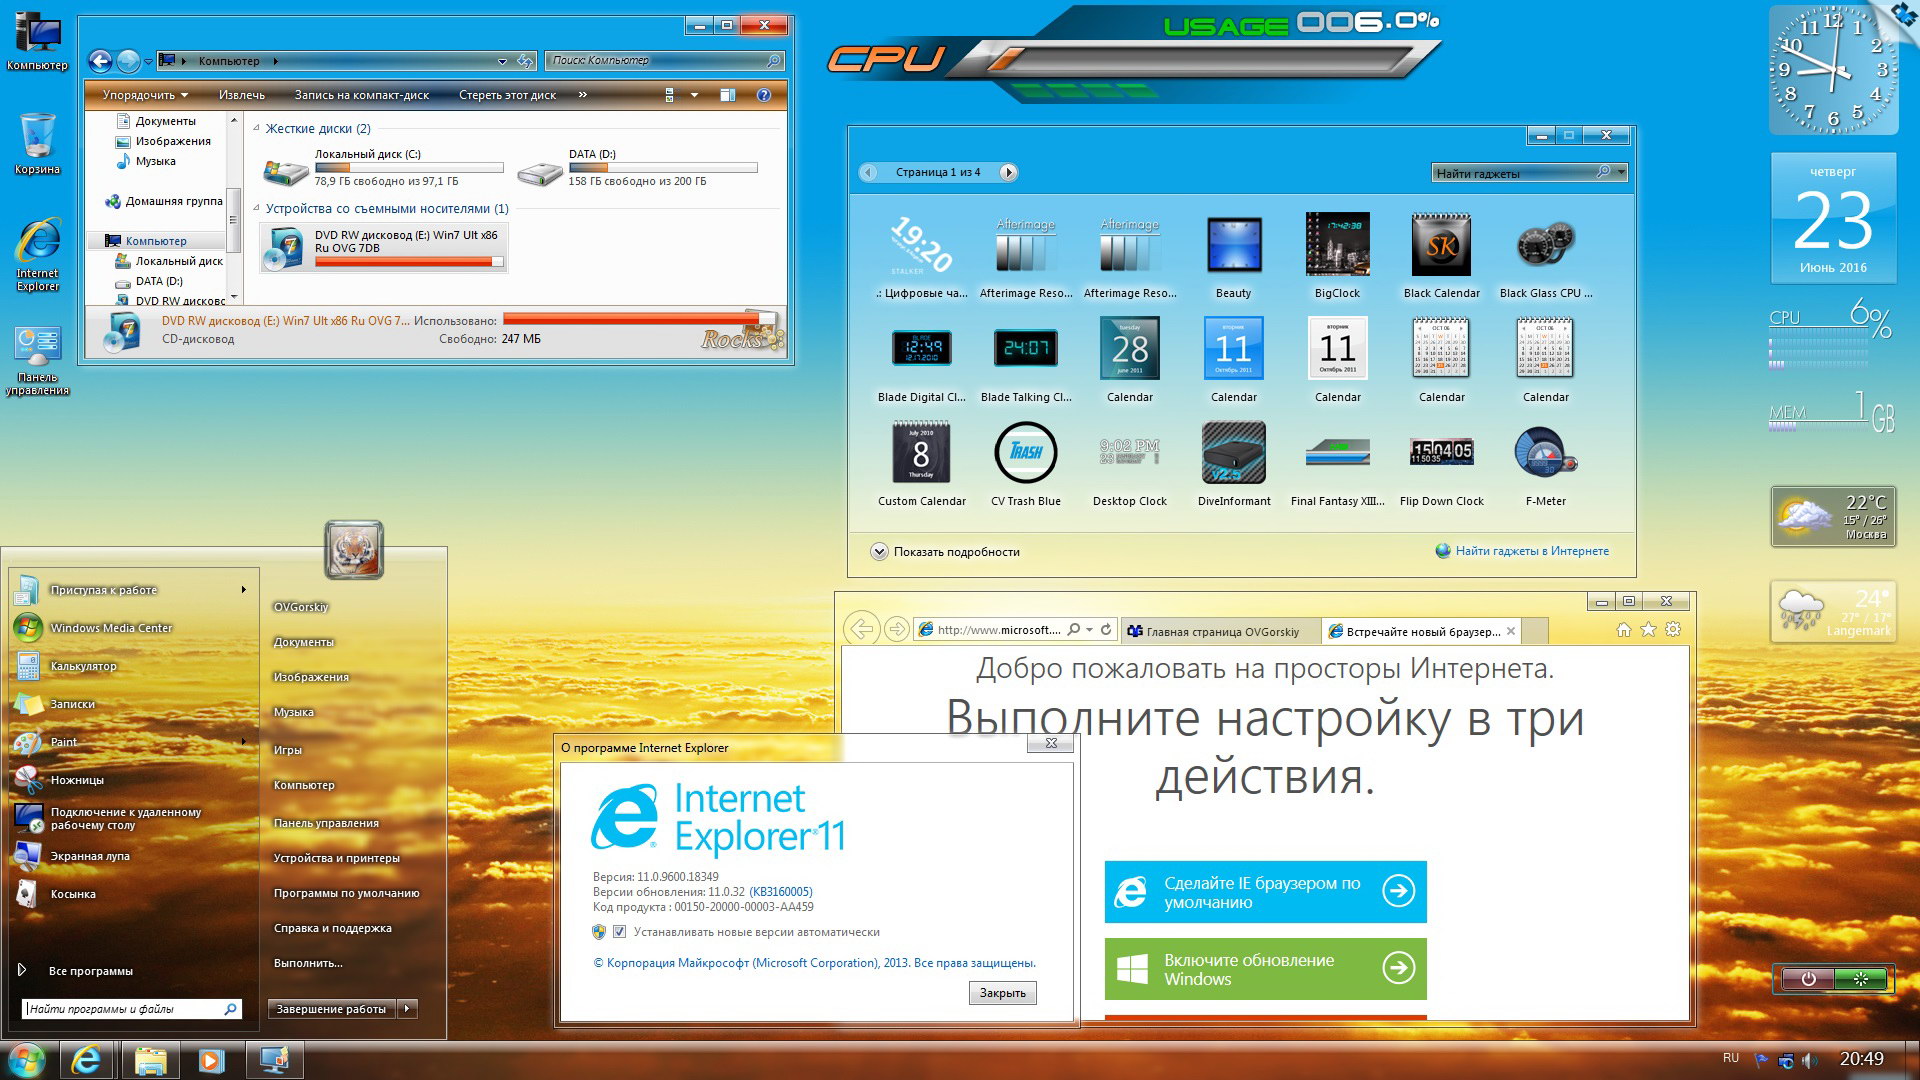 Скачать телеграмм на ноутбук на русском языке для виндовс 7 бесплатно фото 114